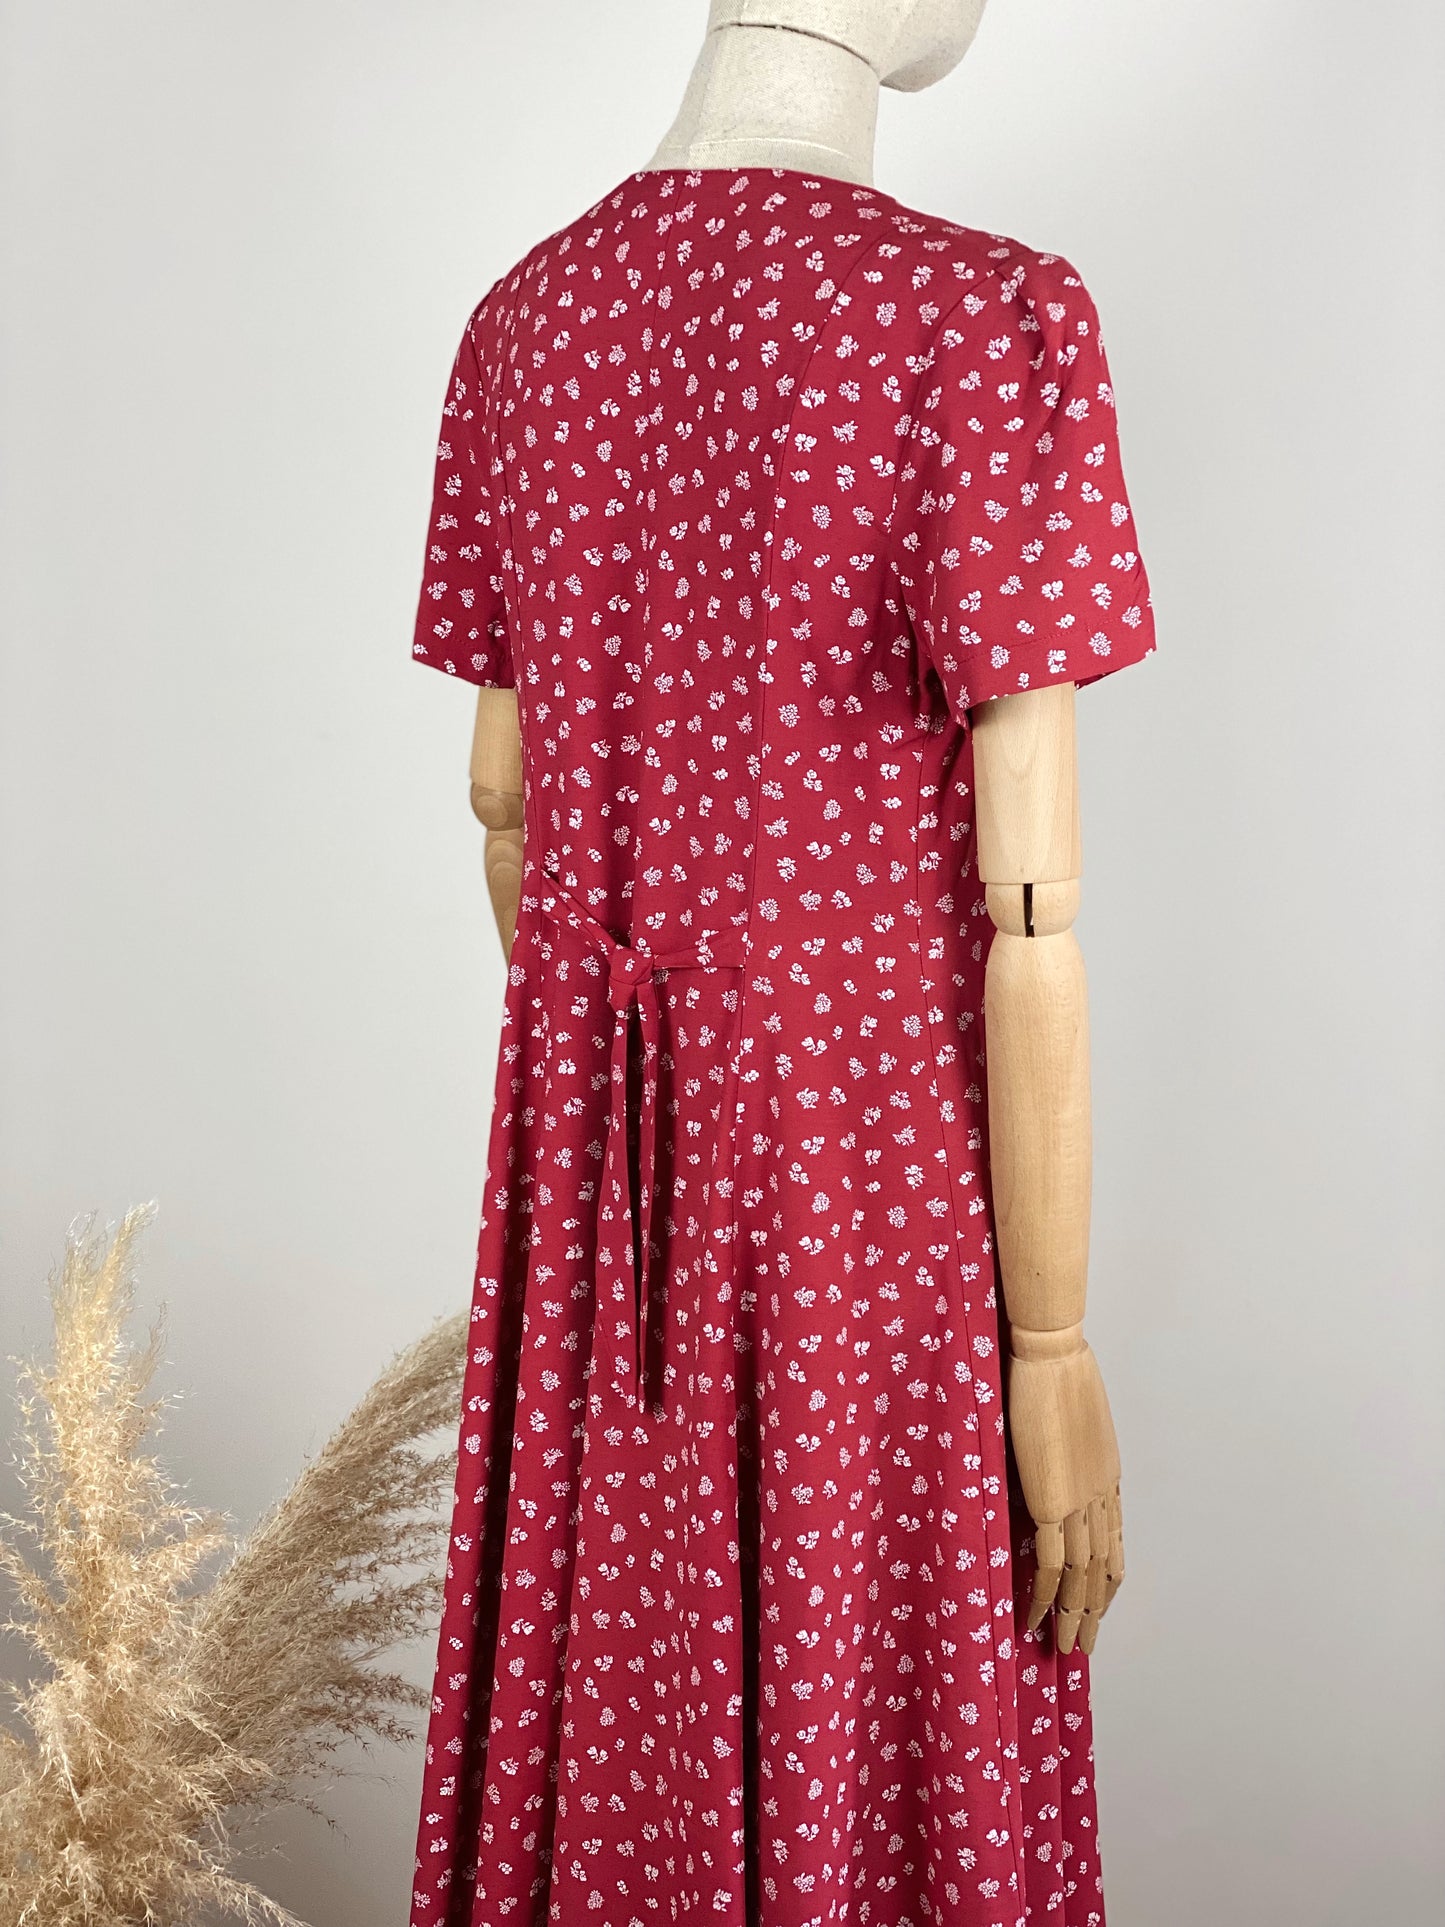 Vintage Long Red Floral Dress